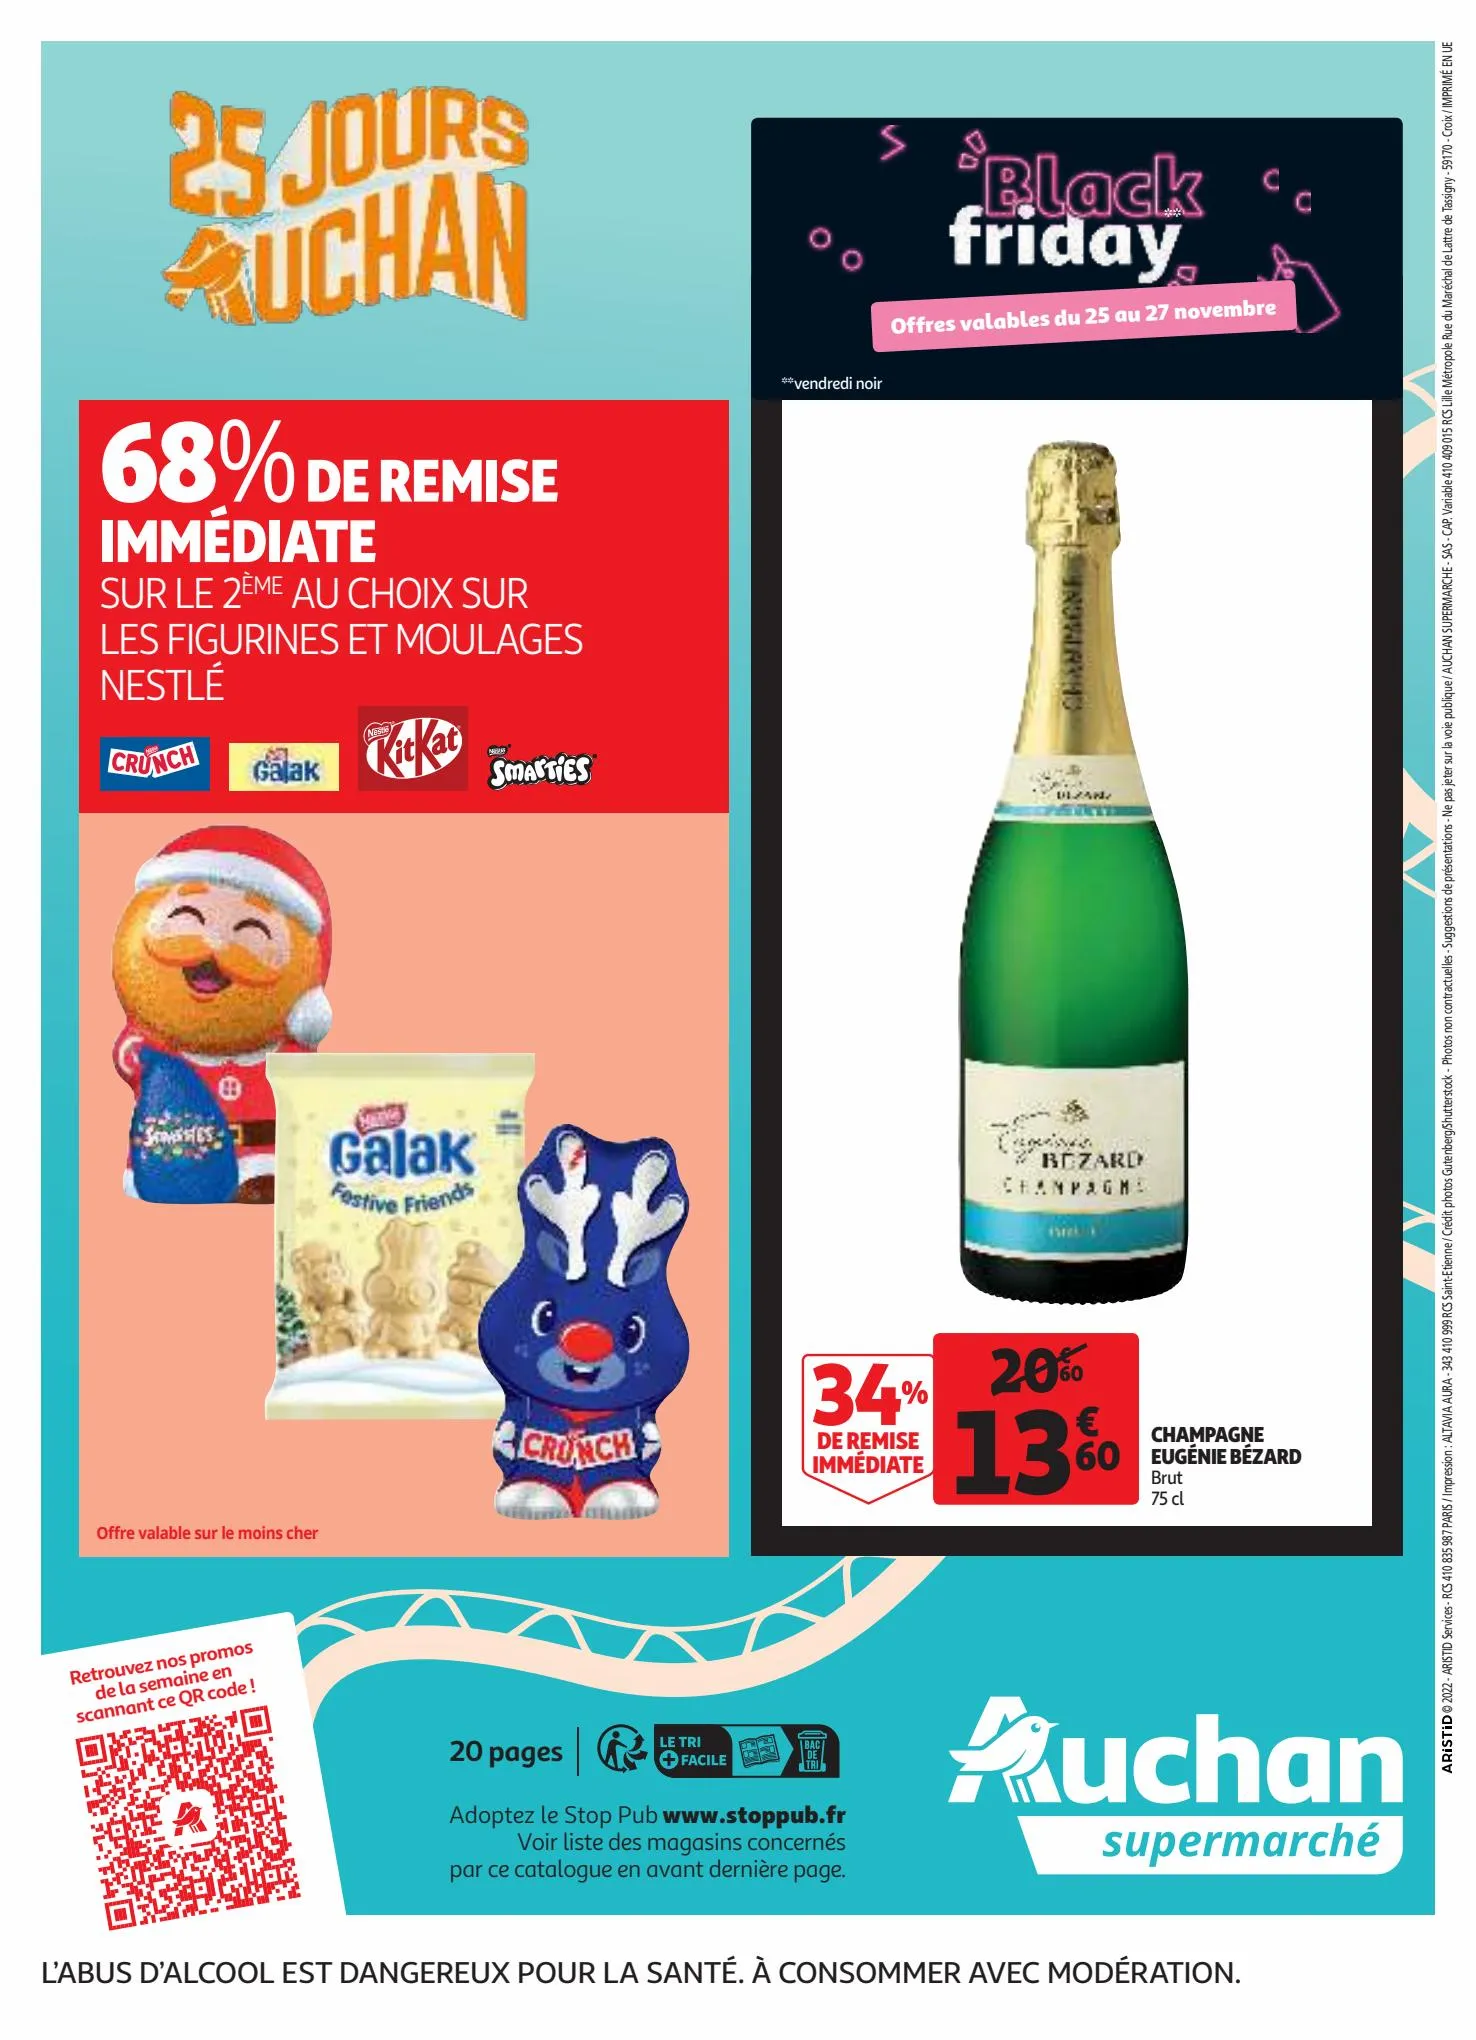 Catalogue 25 jours Auchan, page 00020